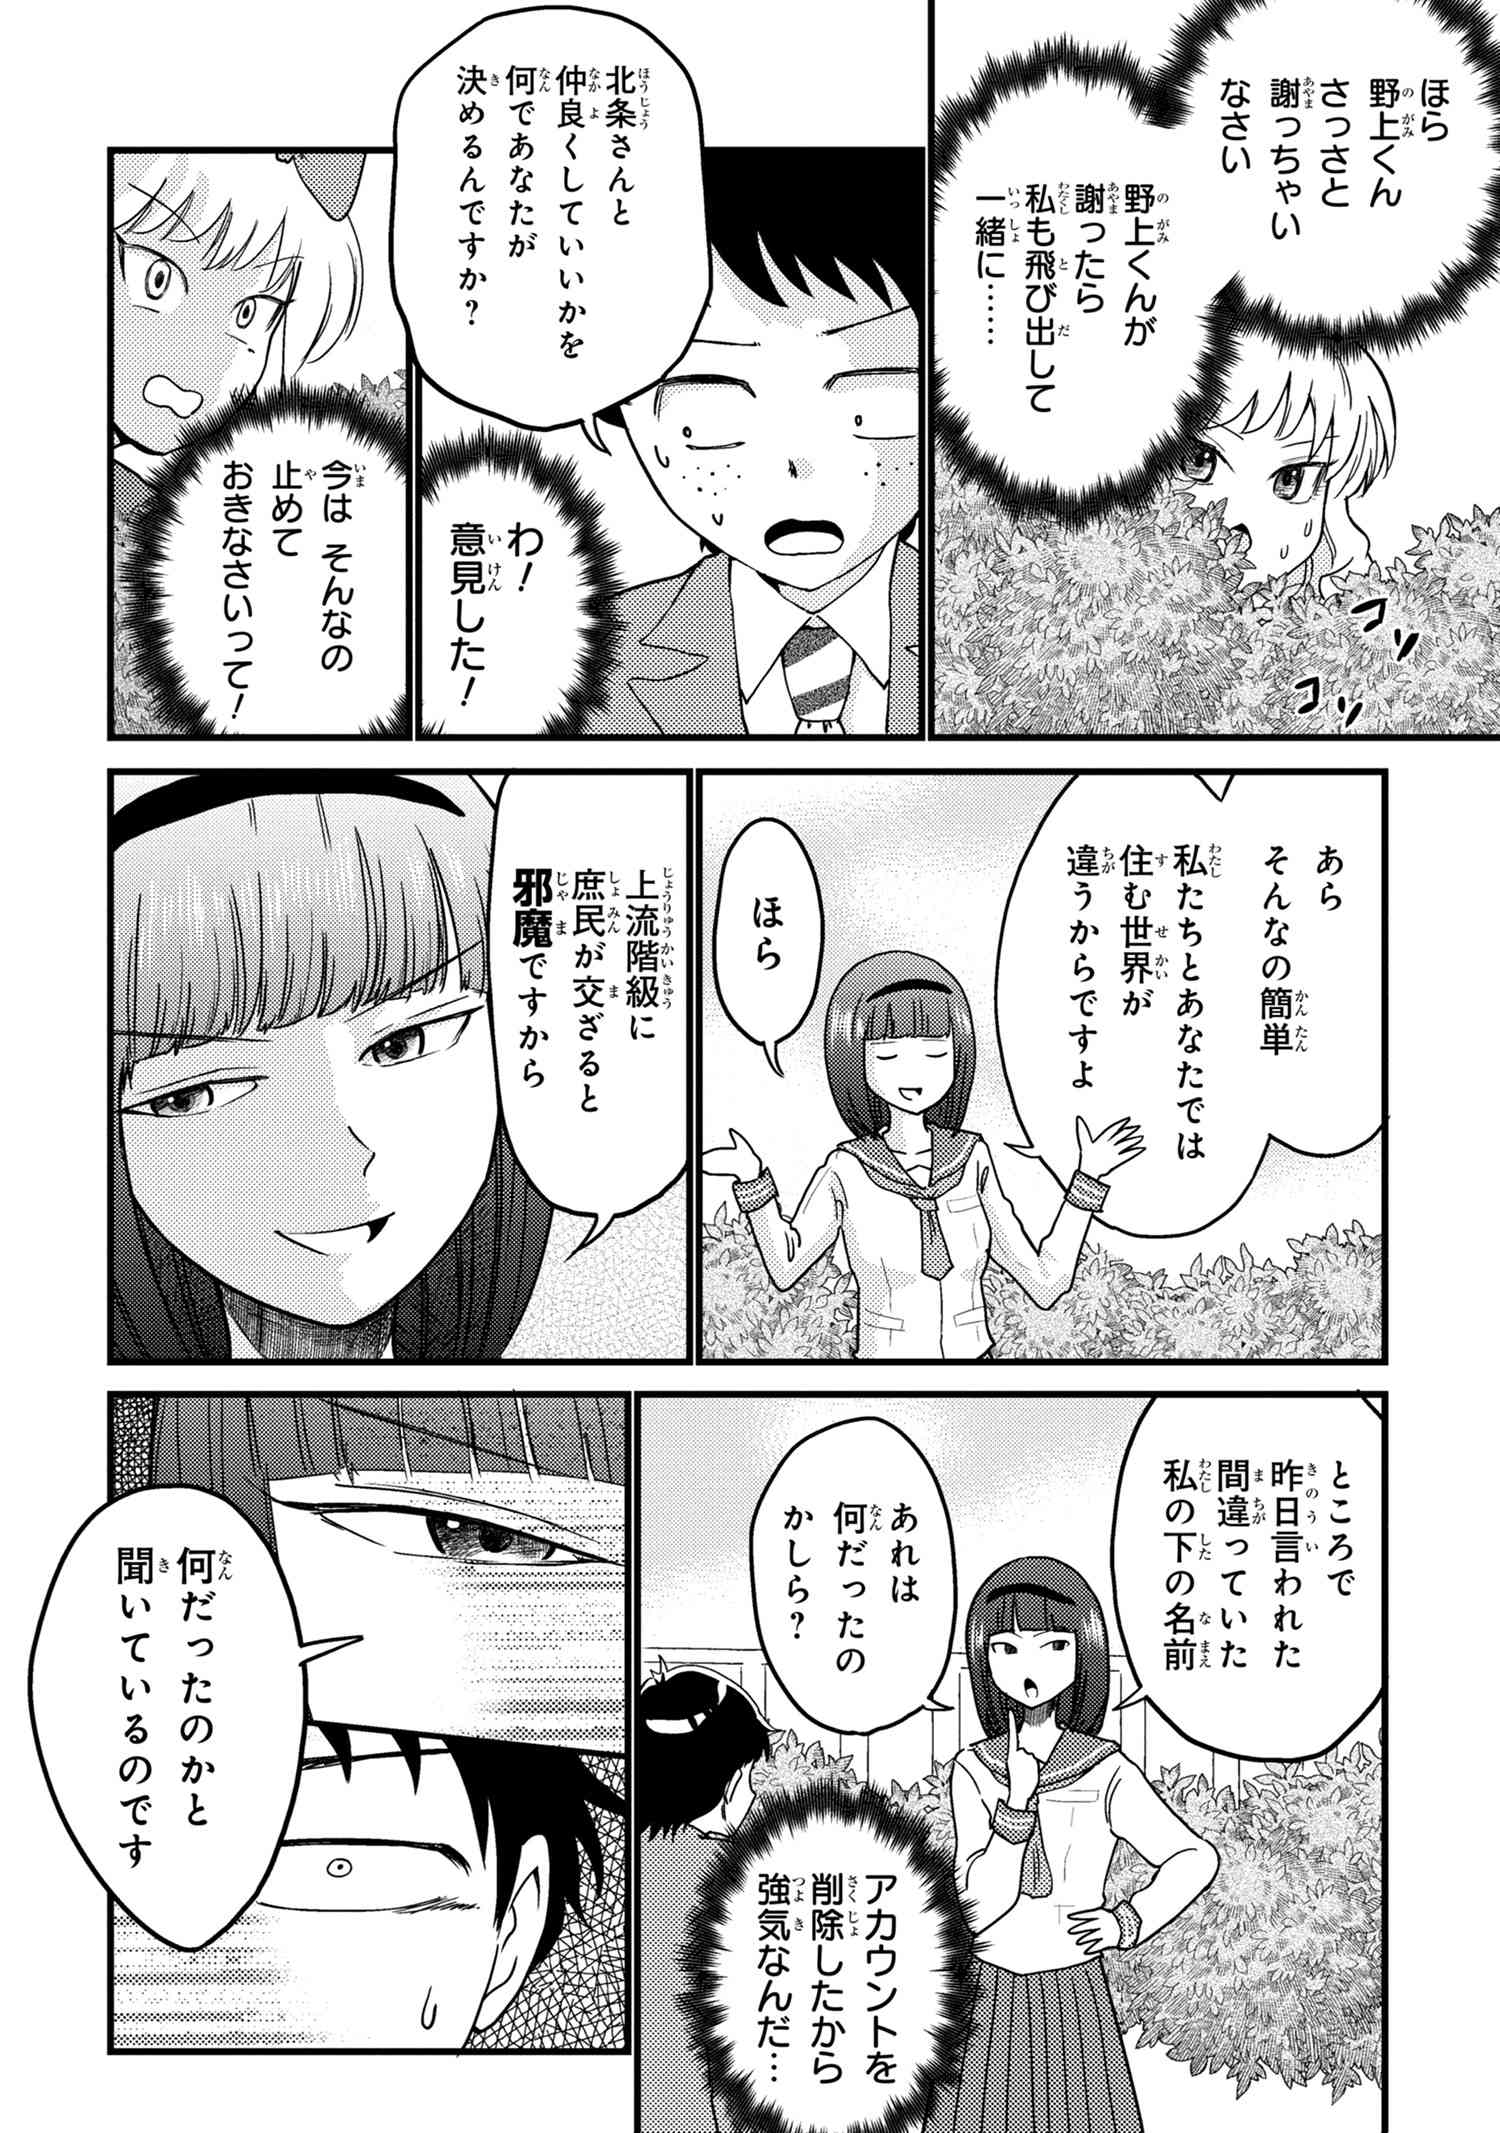 Houjou Urara no renai shousetsu o kaki nasai! - Chapter 14 - Page 4